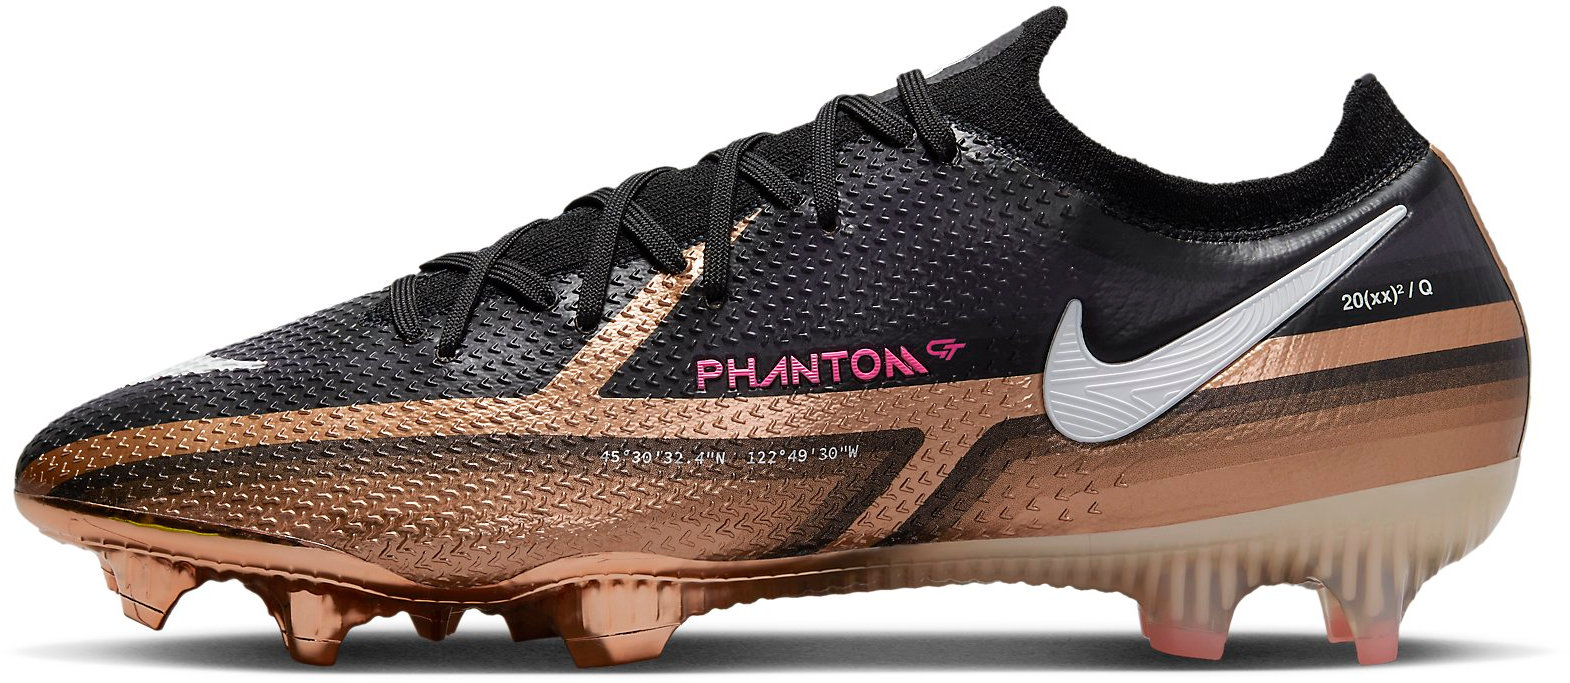 Fußballschuhe Nike PHANTOM GT2 ELITE FG